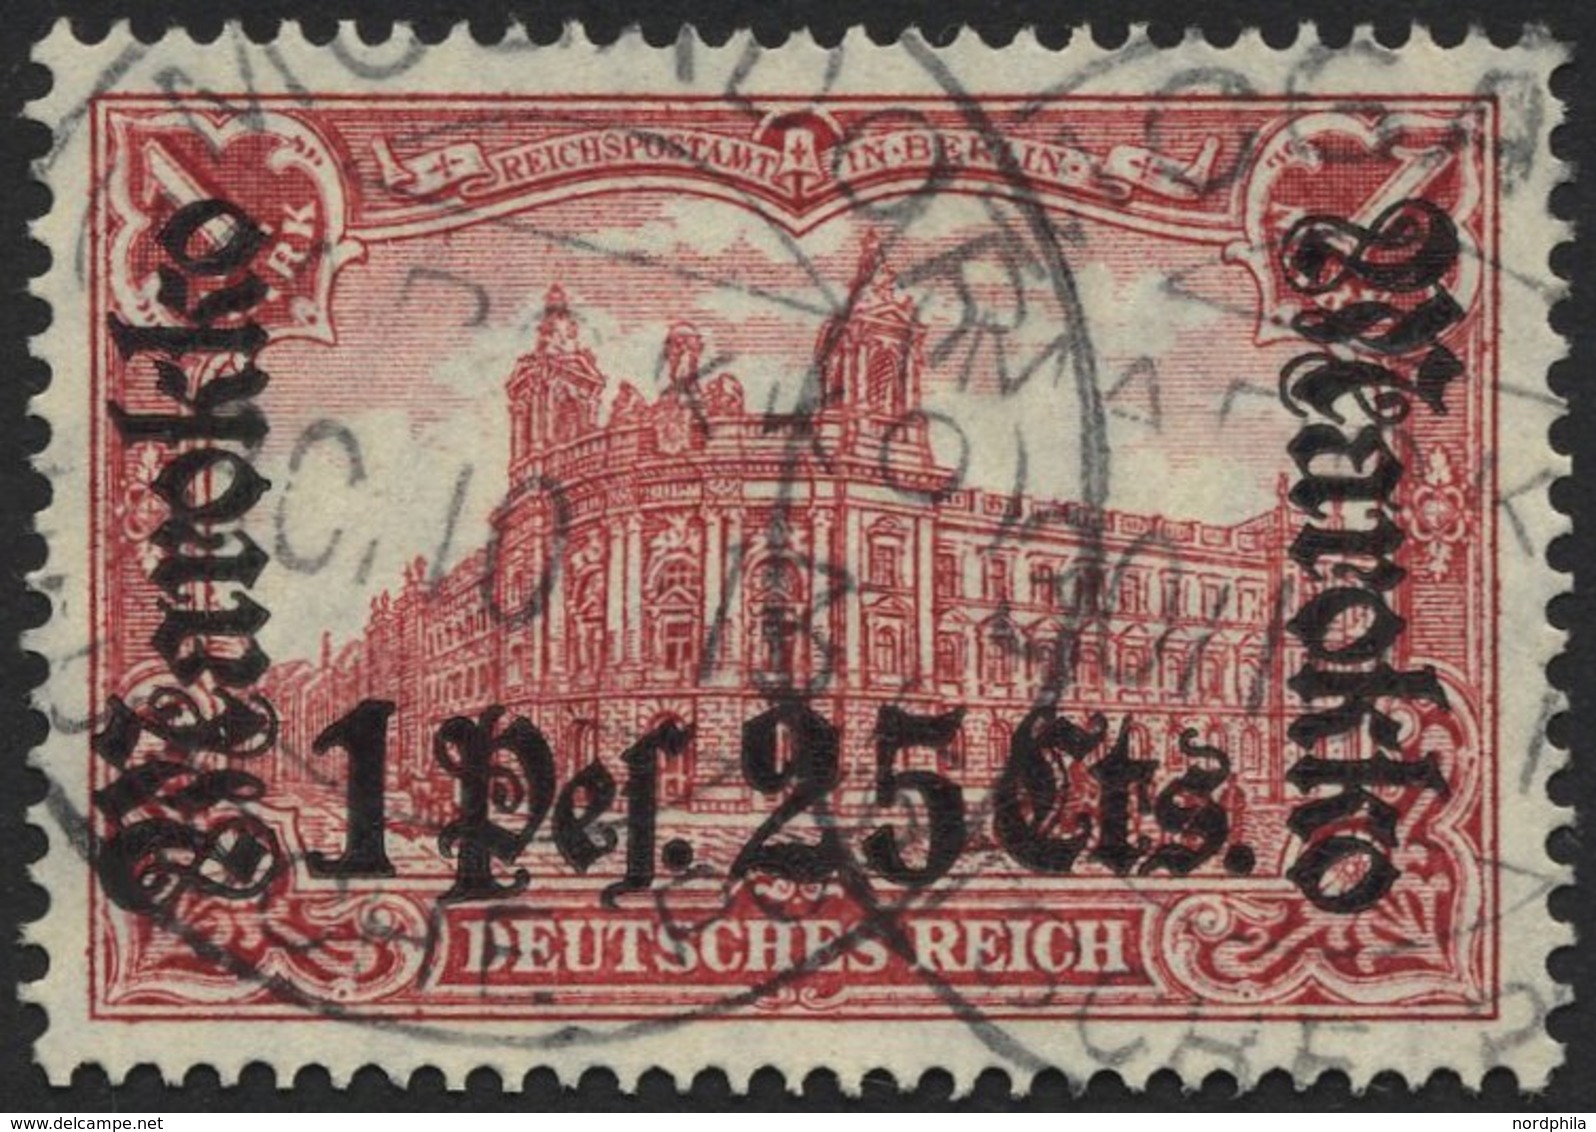 DP IN MAROKKO 55IA O, 1911, 1 P. 25 C. Auf 1 M., Friedensdruck, Stempel MOGADOR, Pracht, Mi. (80.-) - Deutsche Post In Marokko